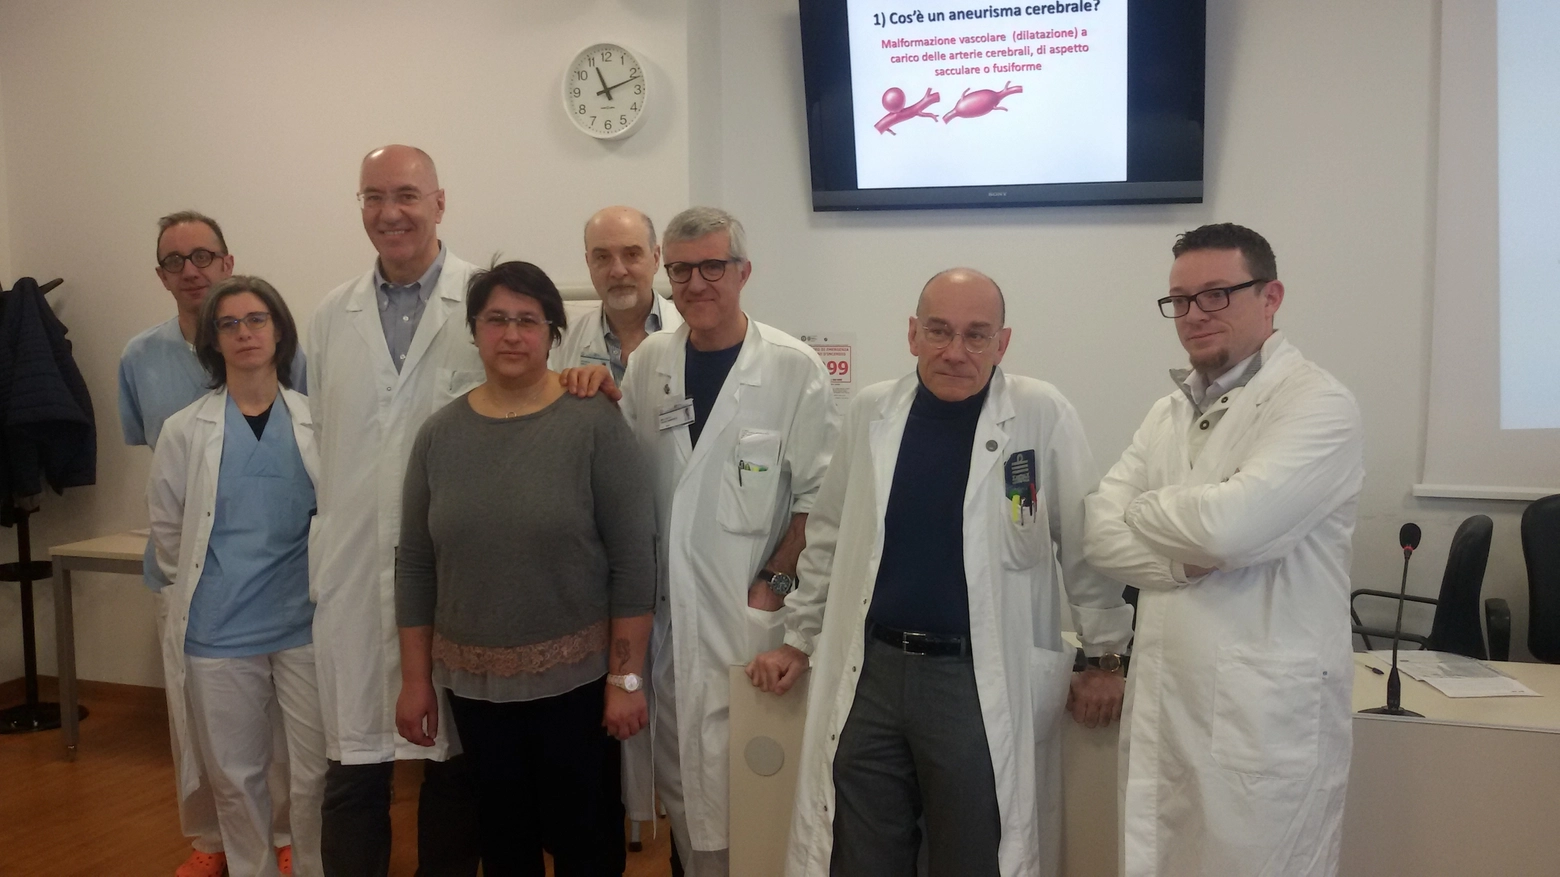 L'equipe dell'ospedale Sant'Anna impegnata nella cura dell'aneurisma